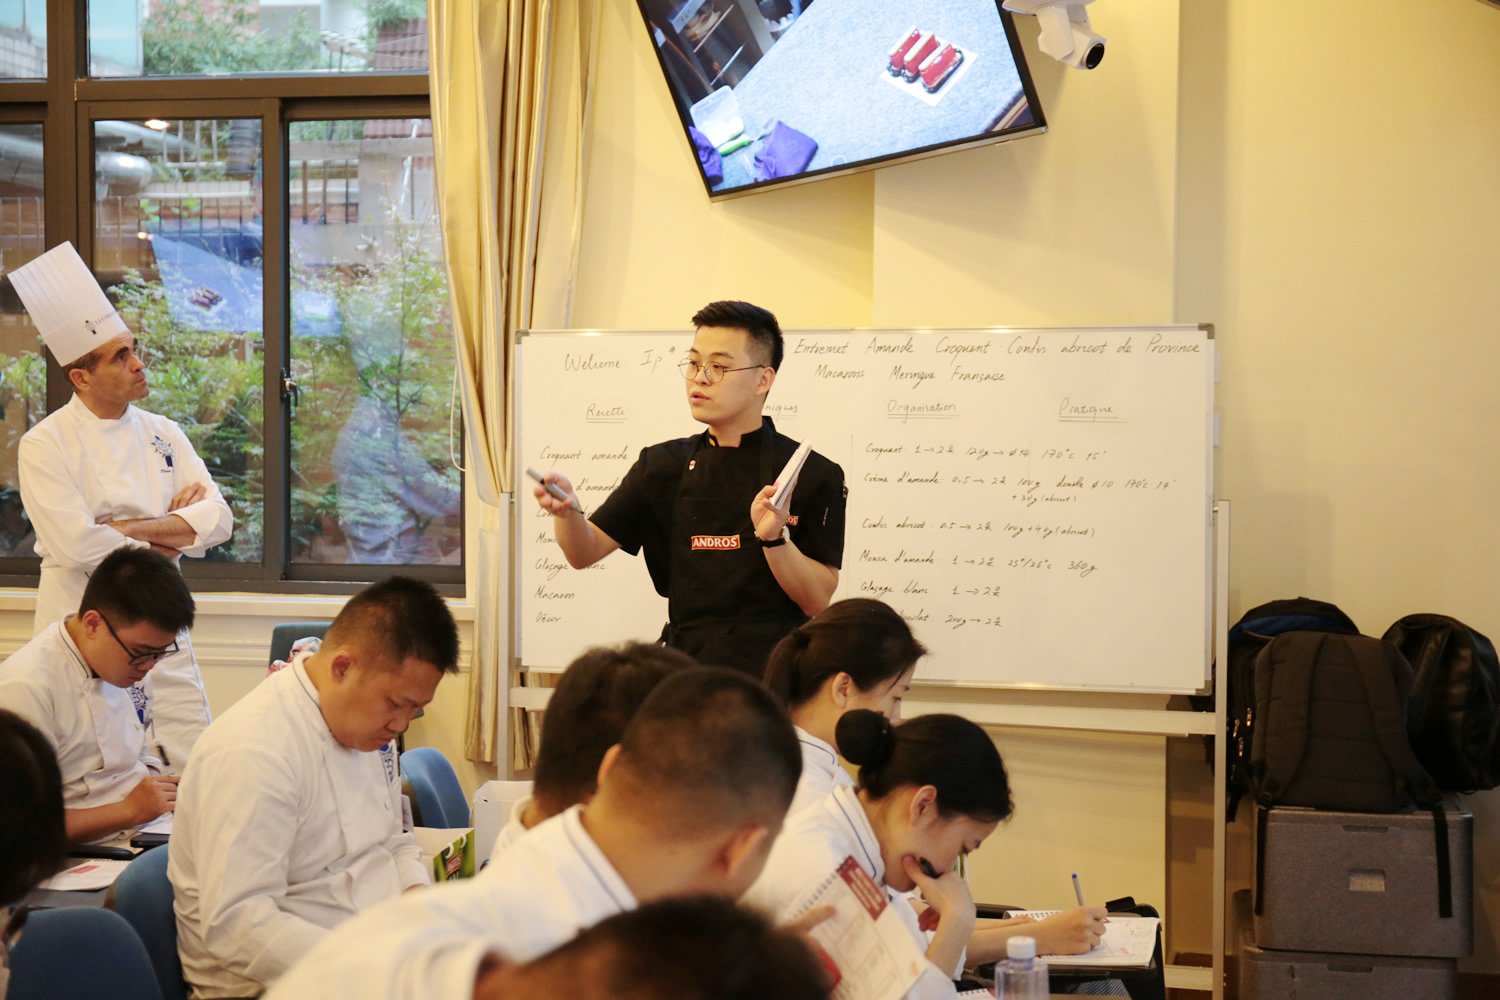 Le Cordon Bleu Shanghai Guest Chef ——Xing Zhiqiang